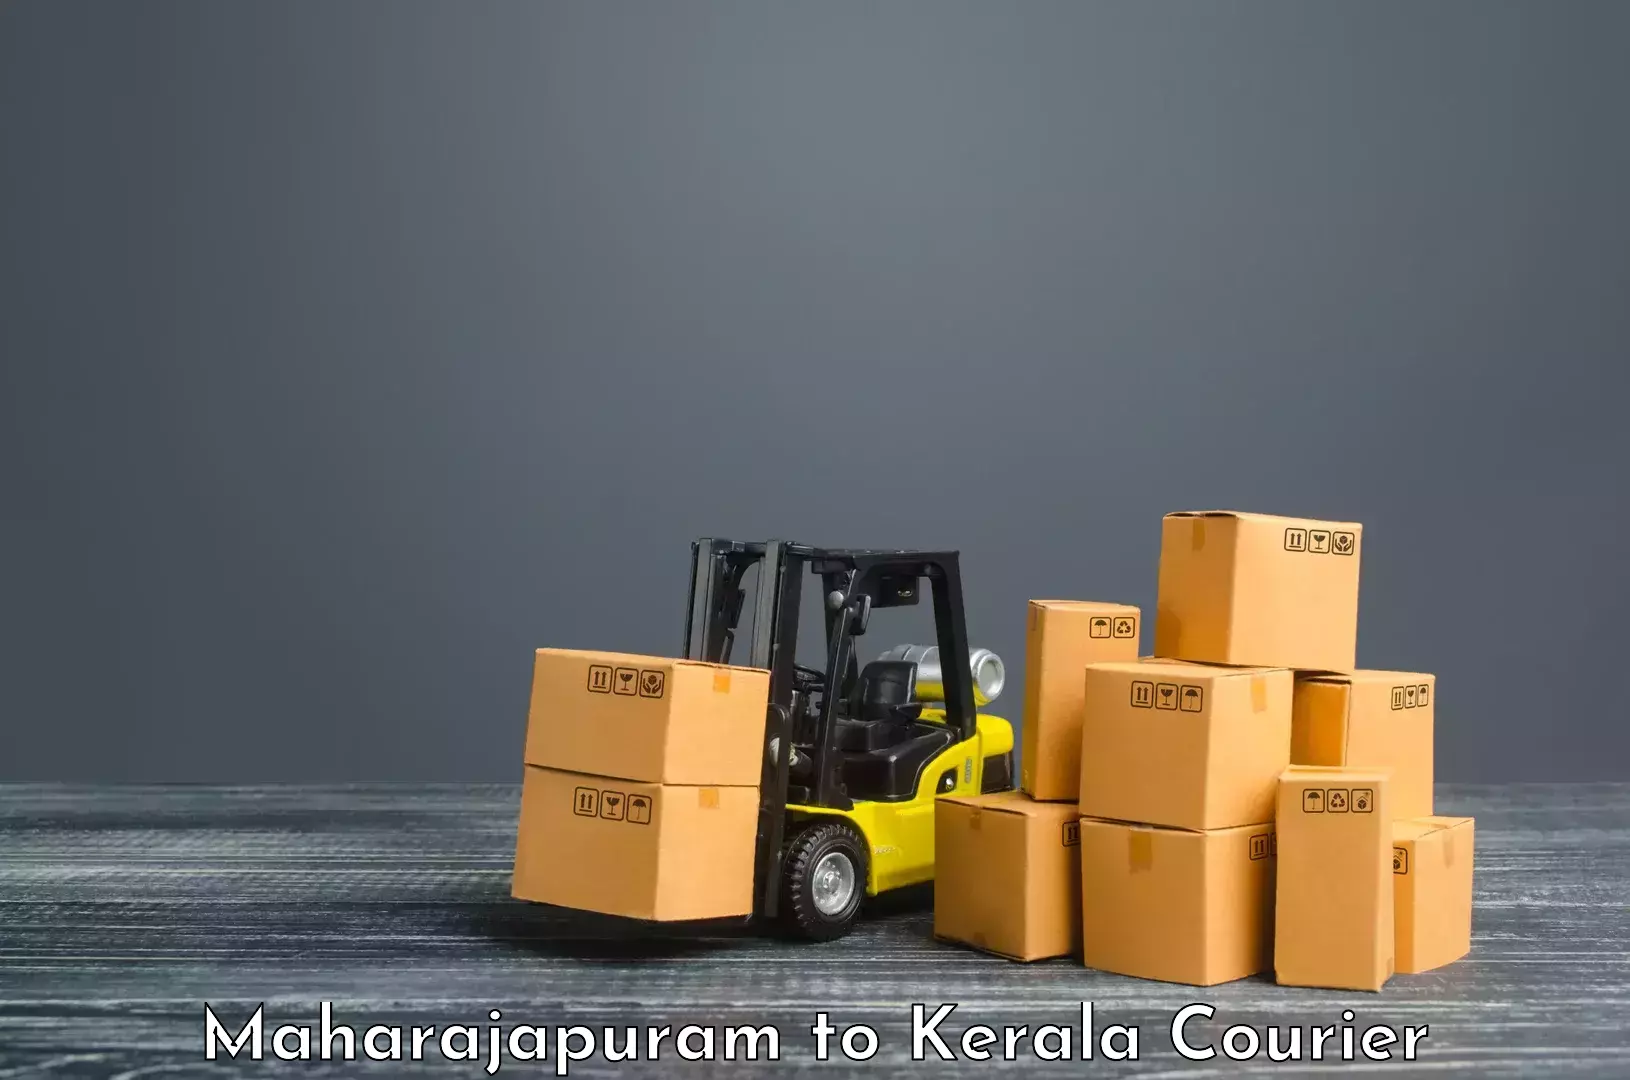 Business courier solutions Maharajapuram to Cochin Port Kochi